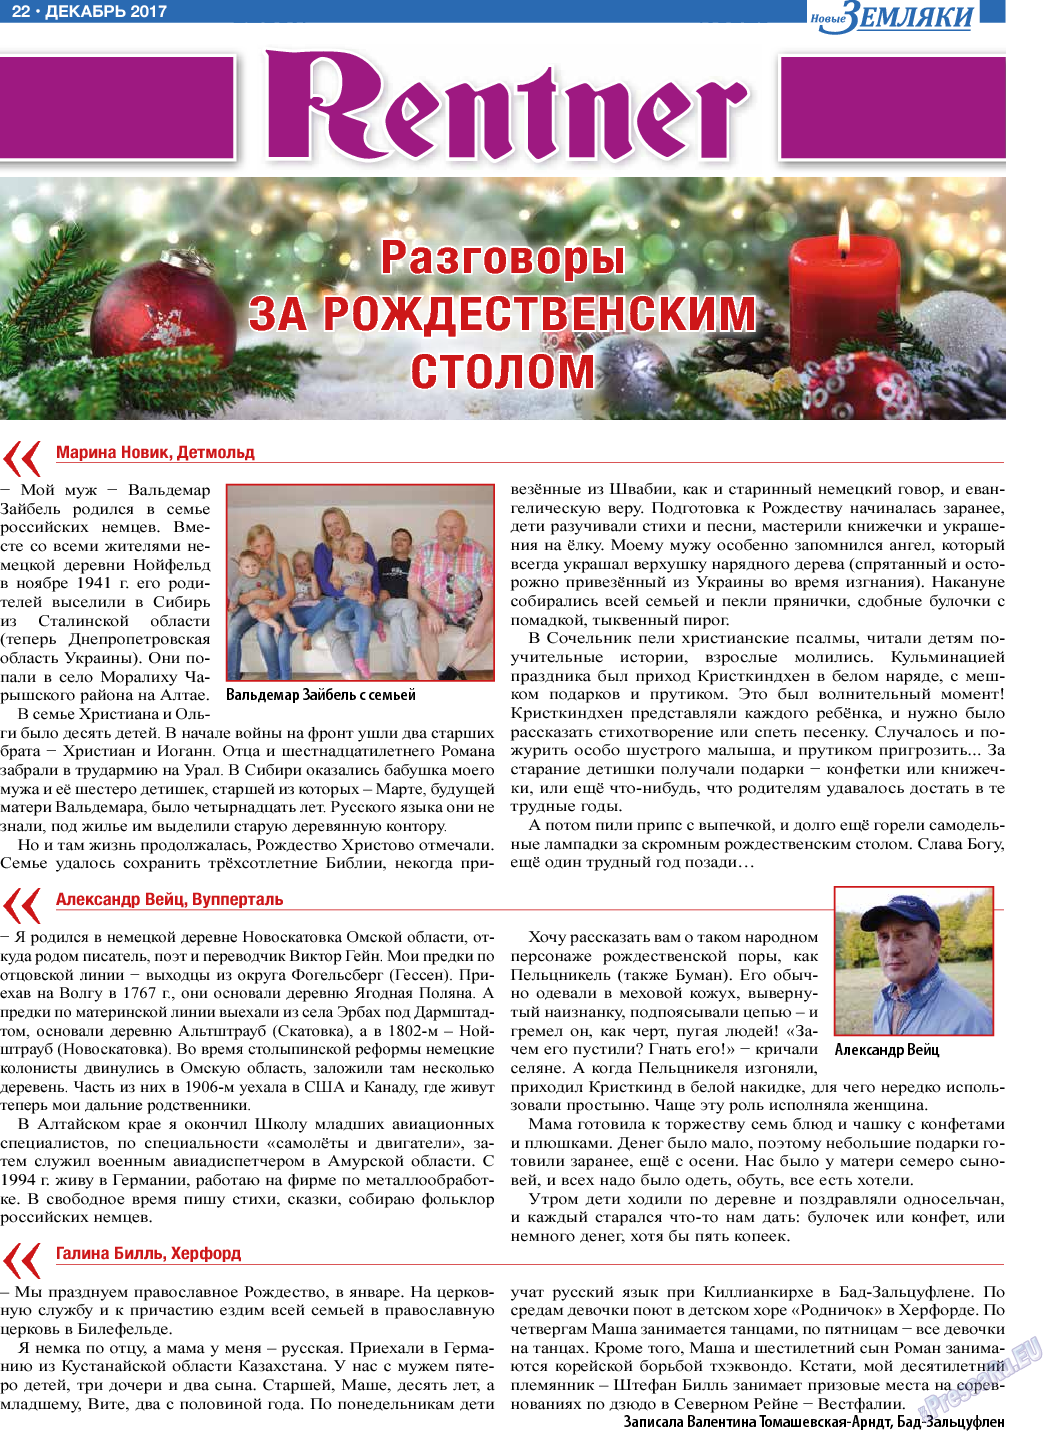 Новые Земляки, газета. 2017 №12 стр.22